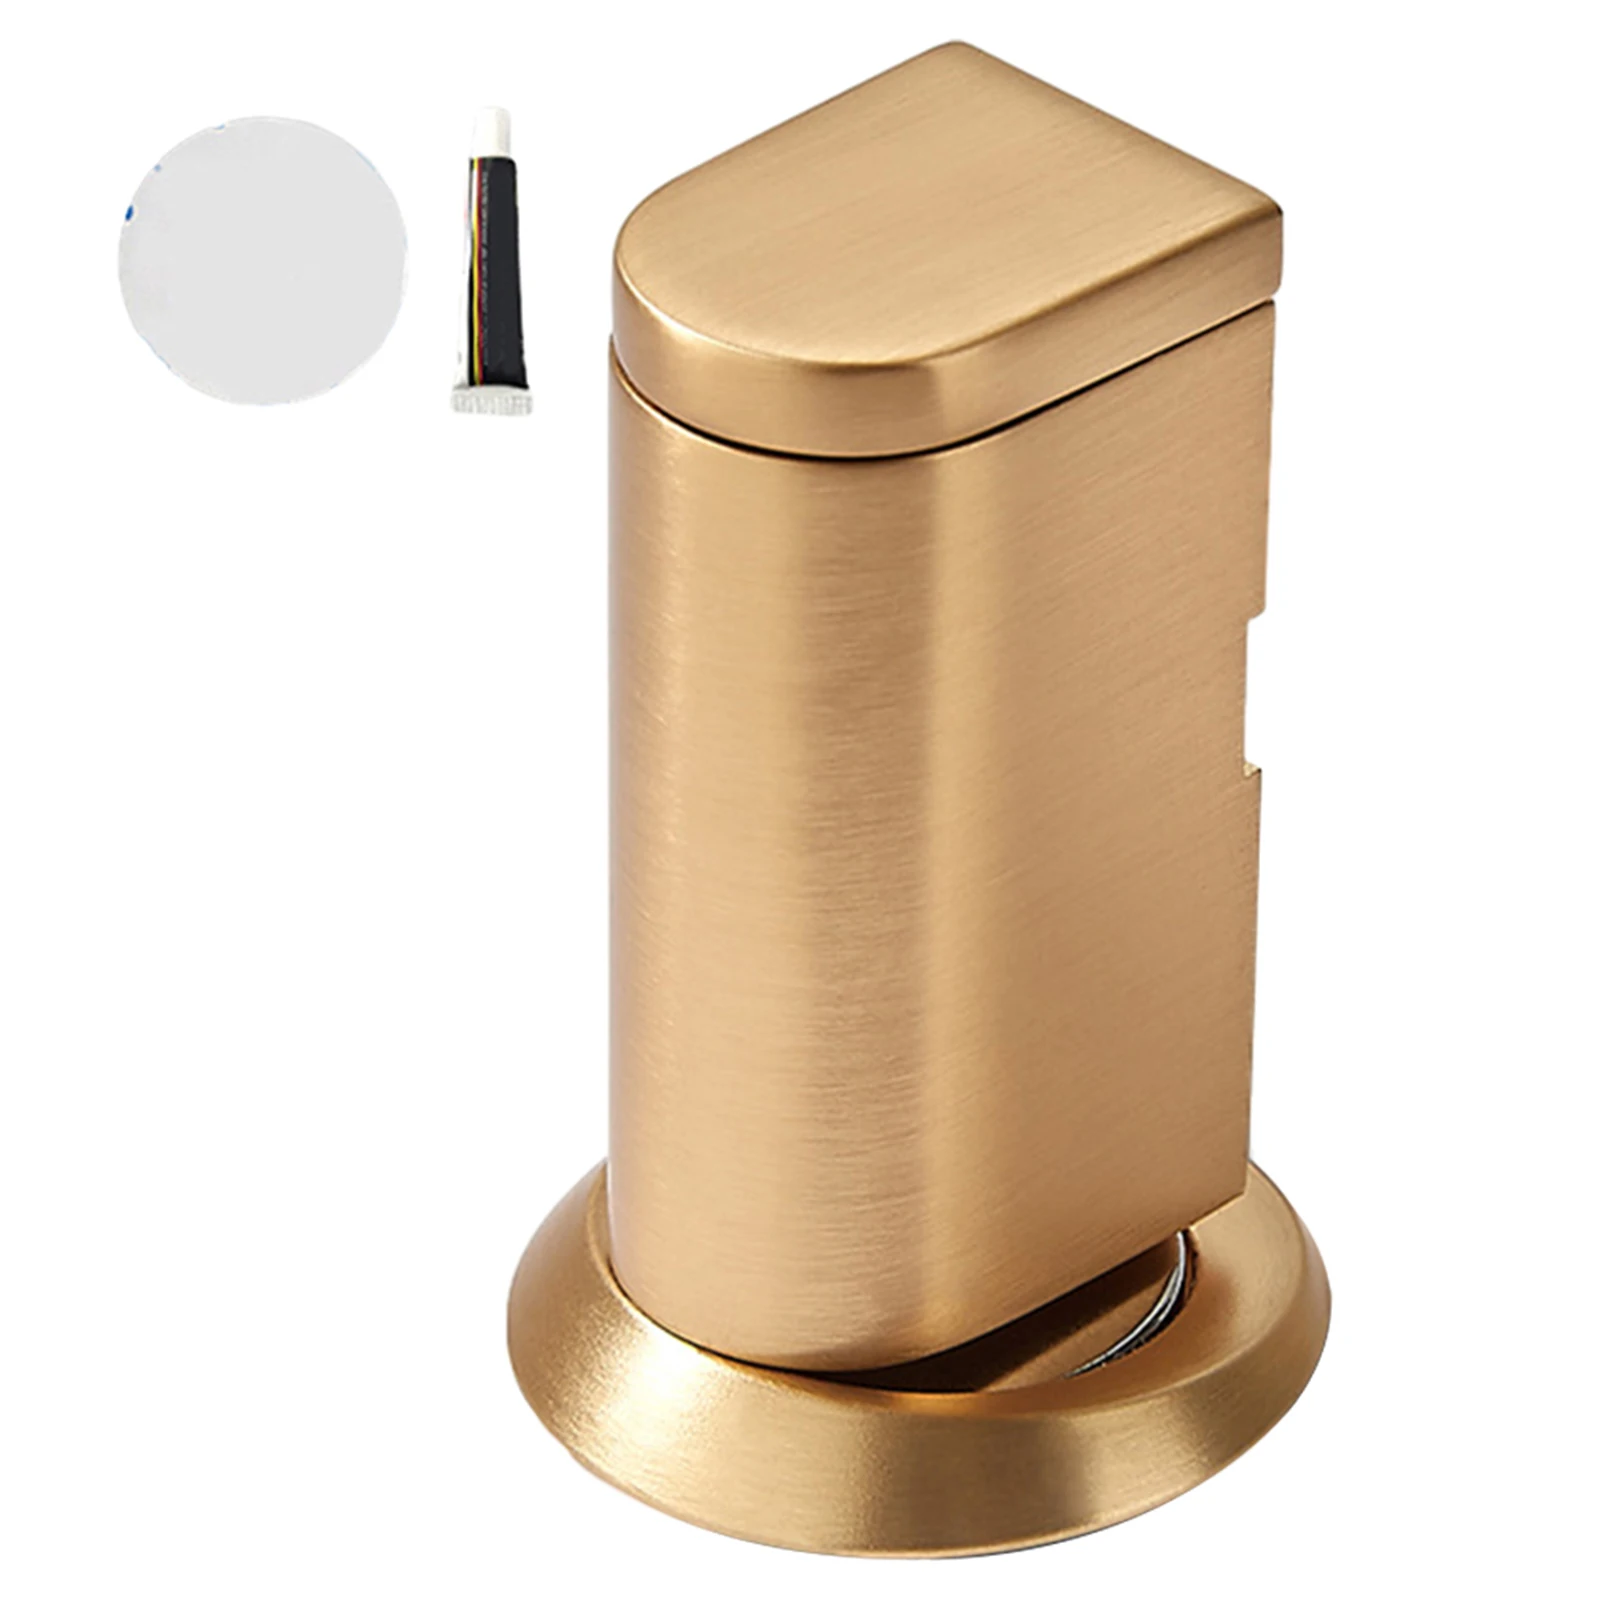 

Magnetic Door Stop Catches Invisible Door Stopper Holder Zinc Alloy Wall Mount Wind-Proof Invisible Door Stopper Door Hardware